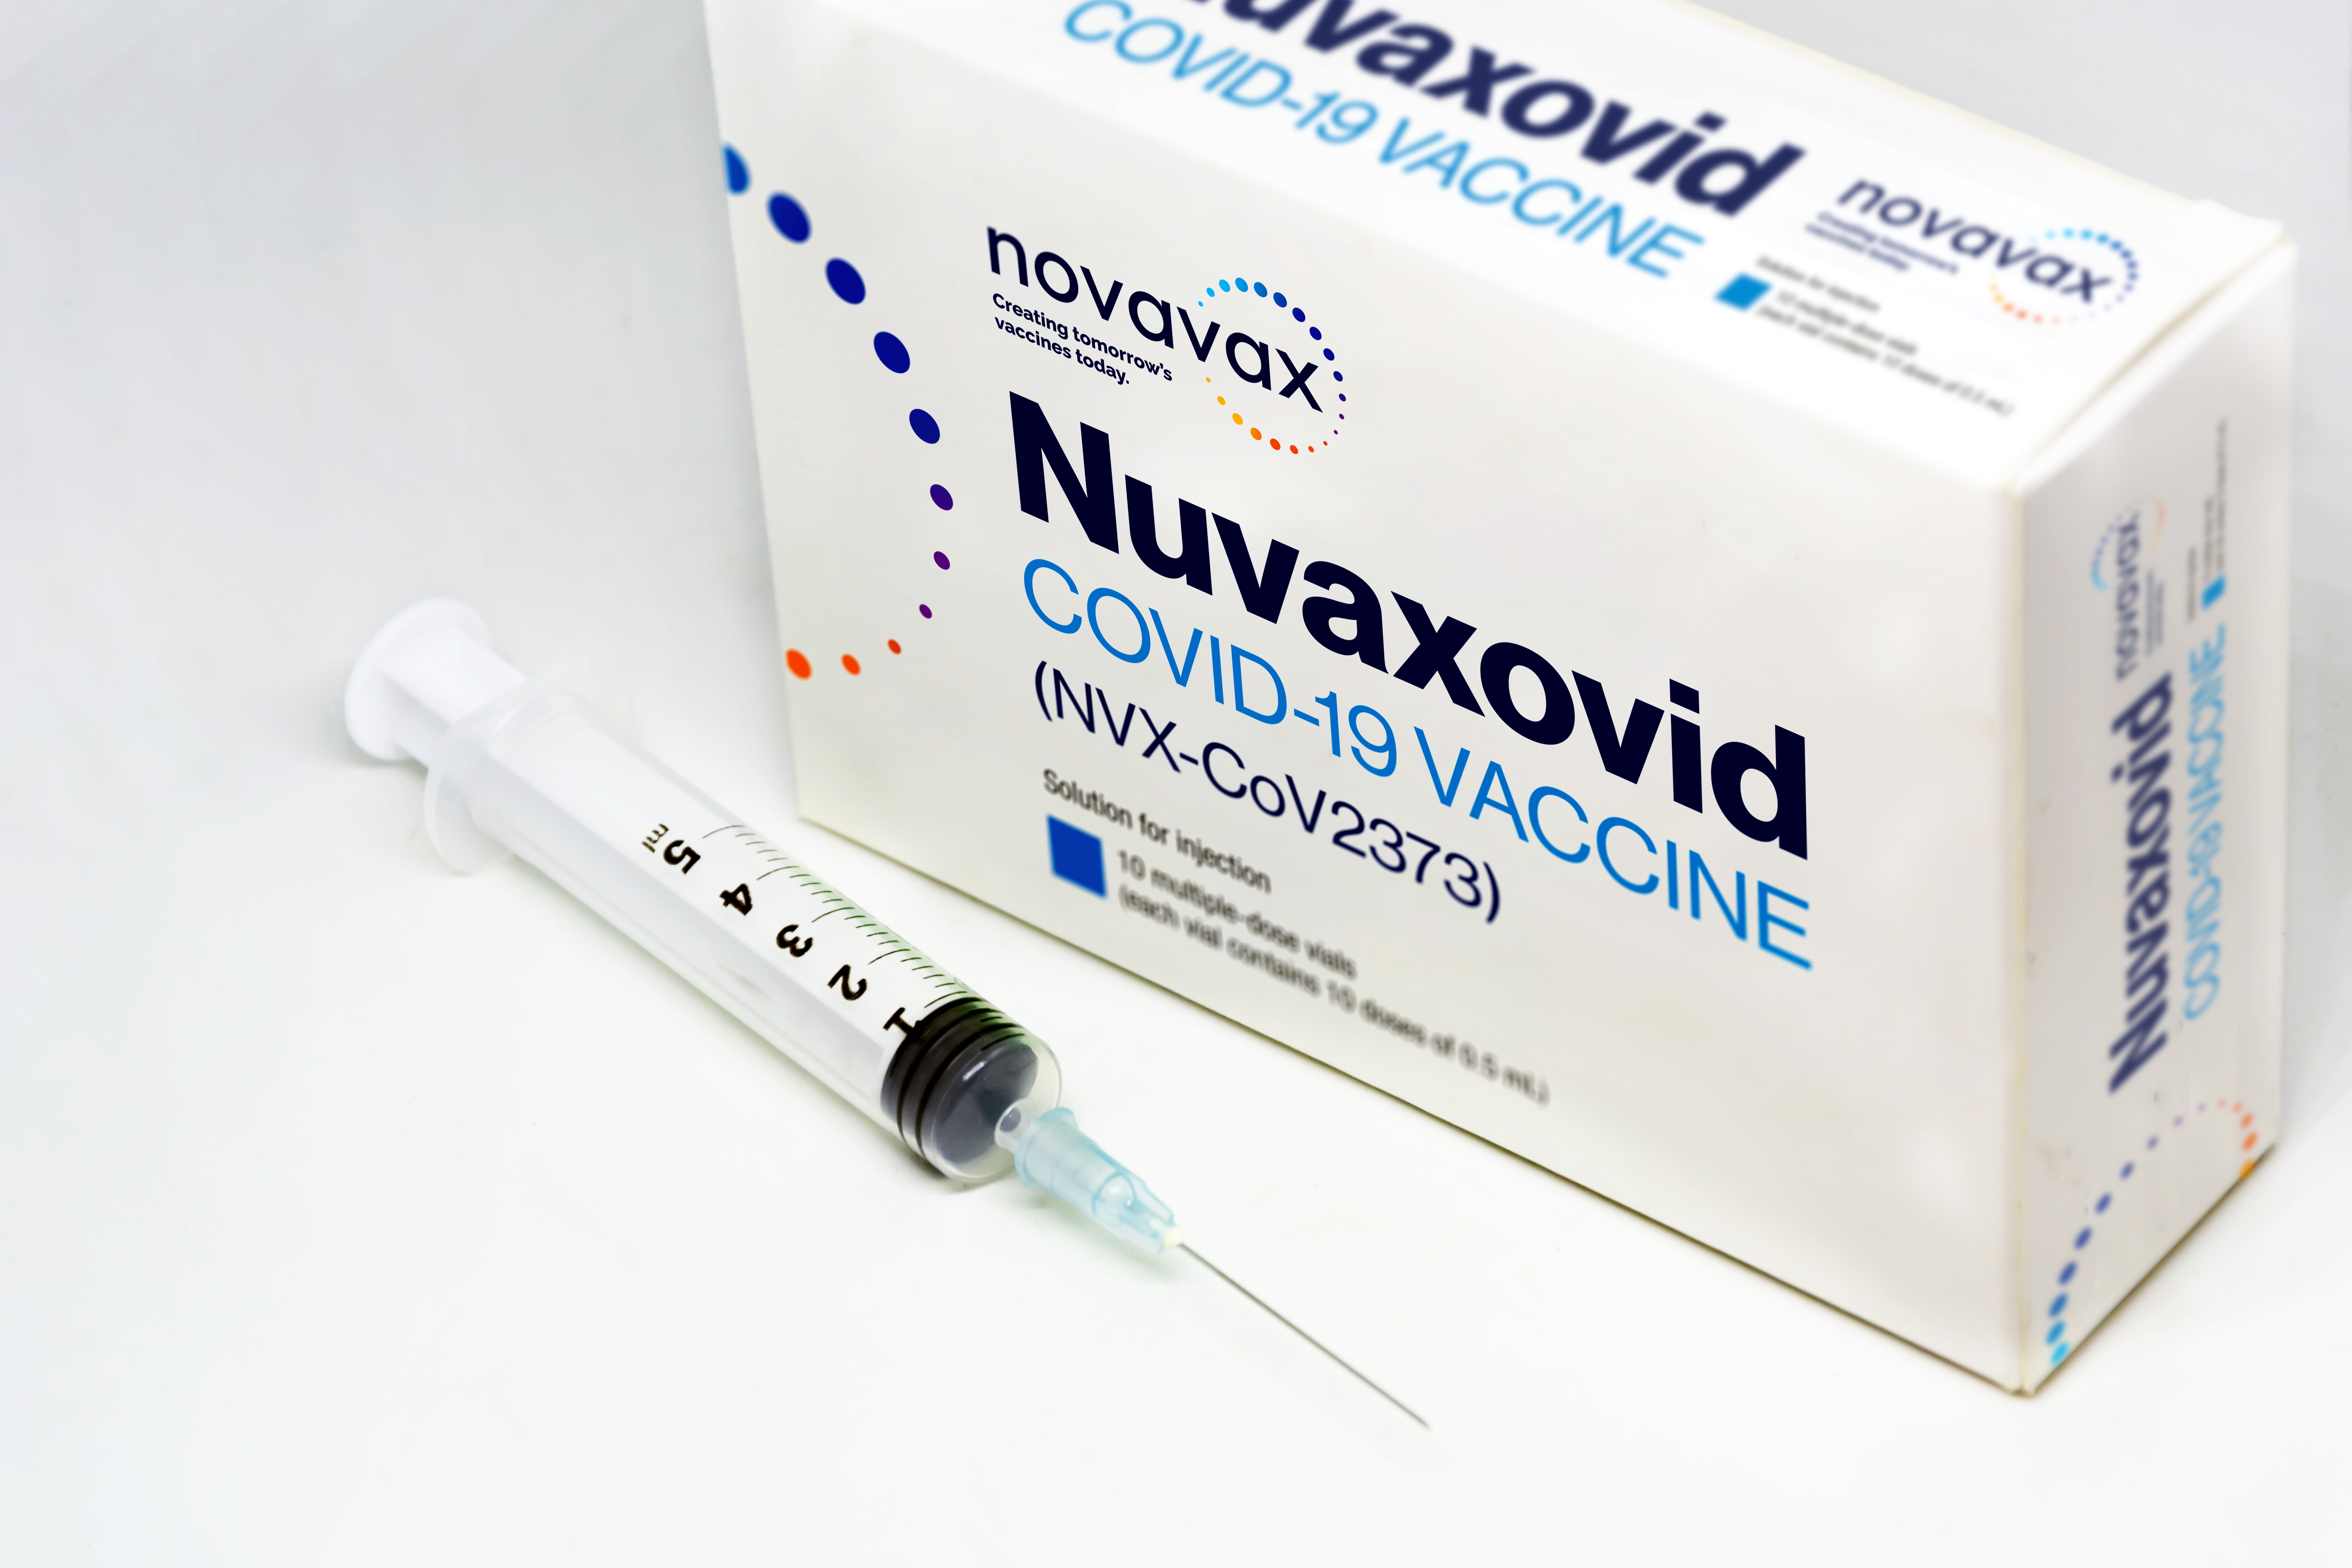     Lancement de la vaccination en Guadeloupe avec Novavax  

